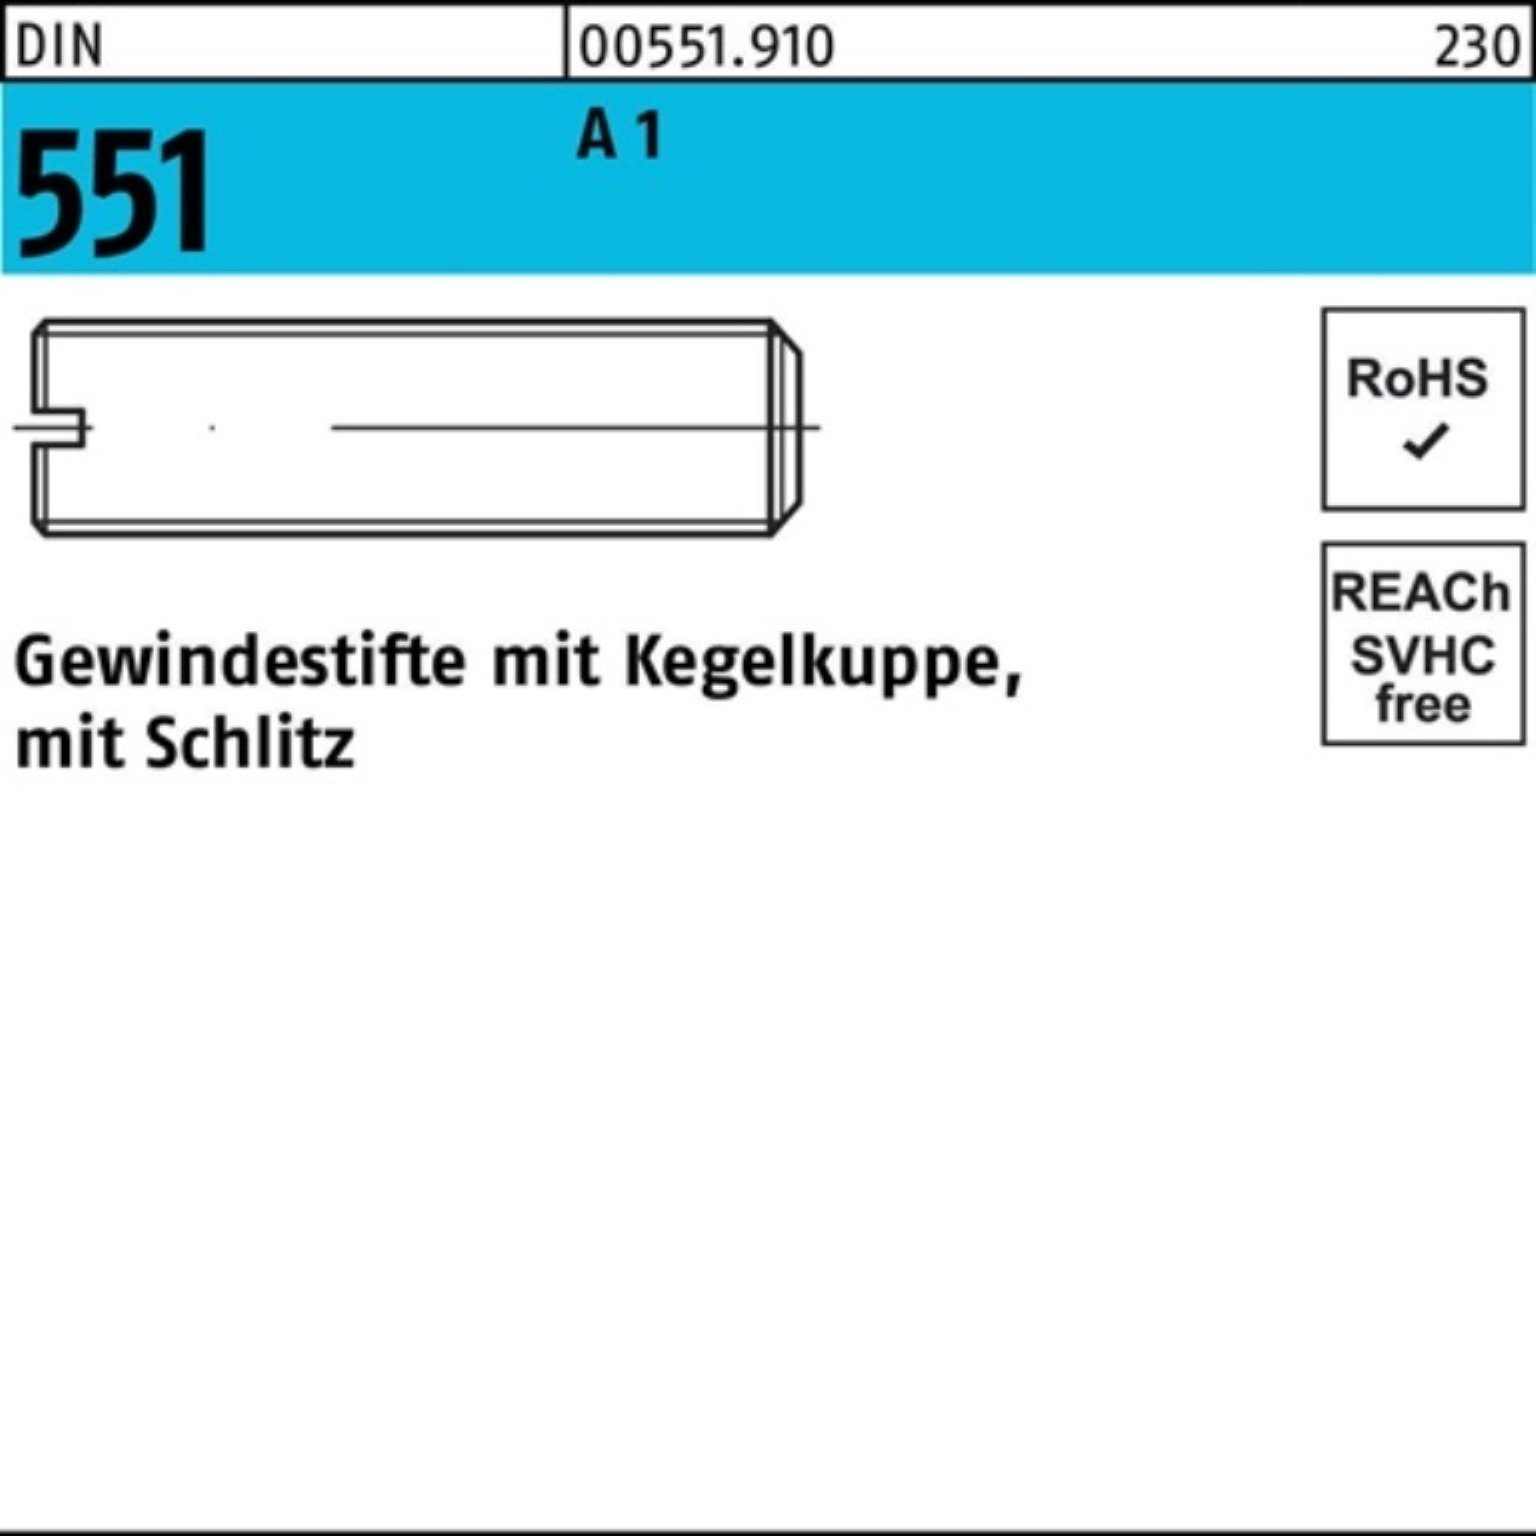 M4x DIN 12 Reyher Kegelkuppe/Schlitz 100er A1/1.4305 Gewindebolzen 551 50 Gewindestift Pack